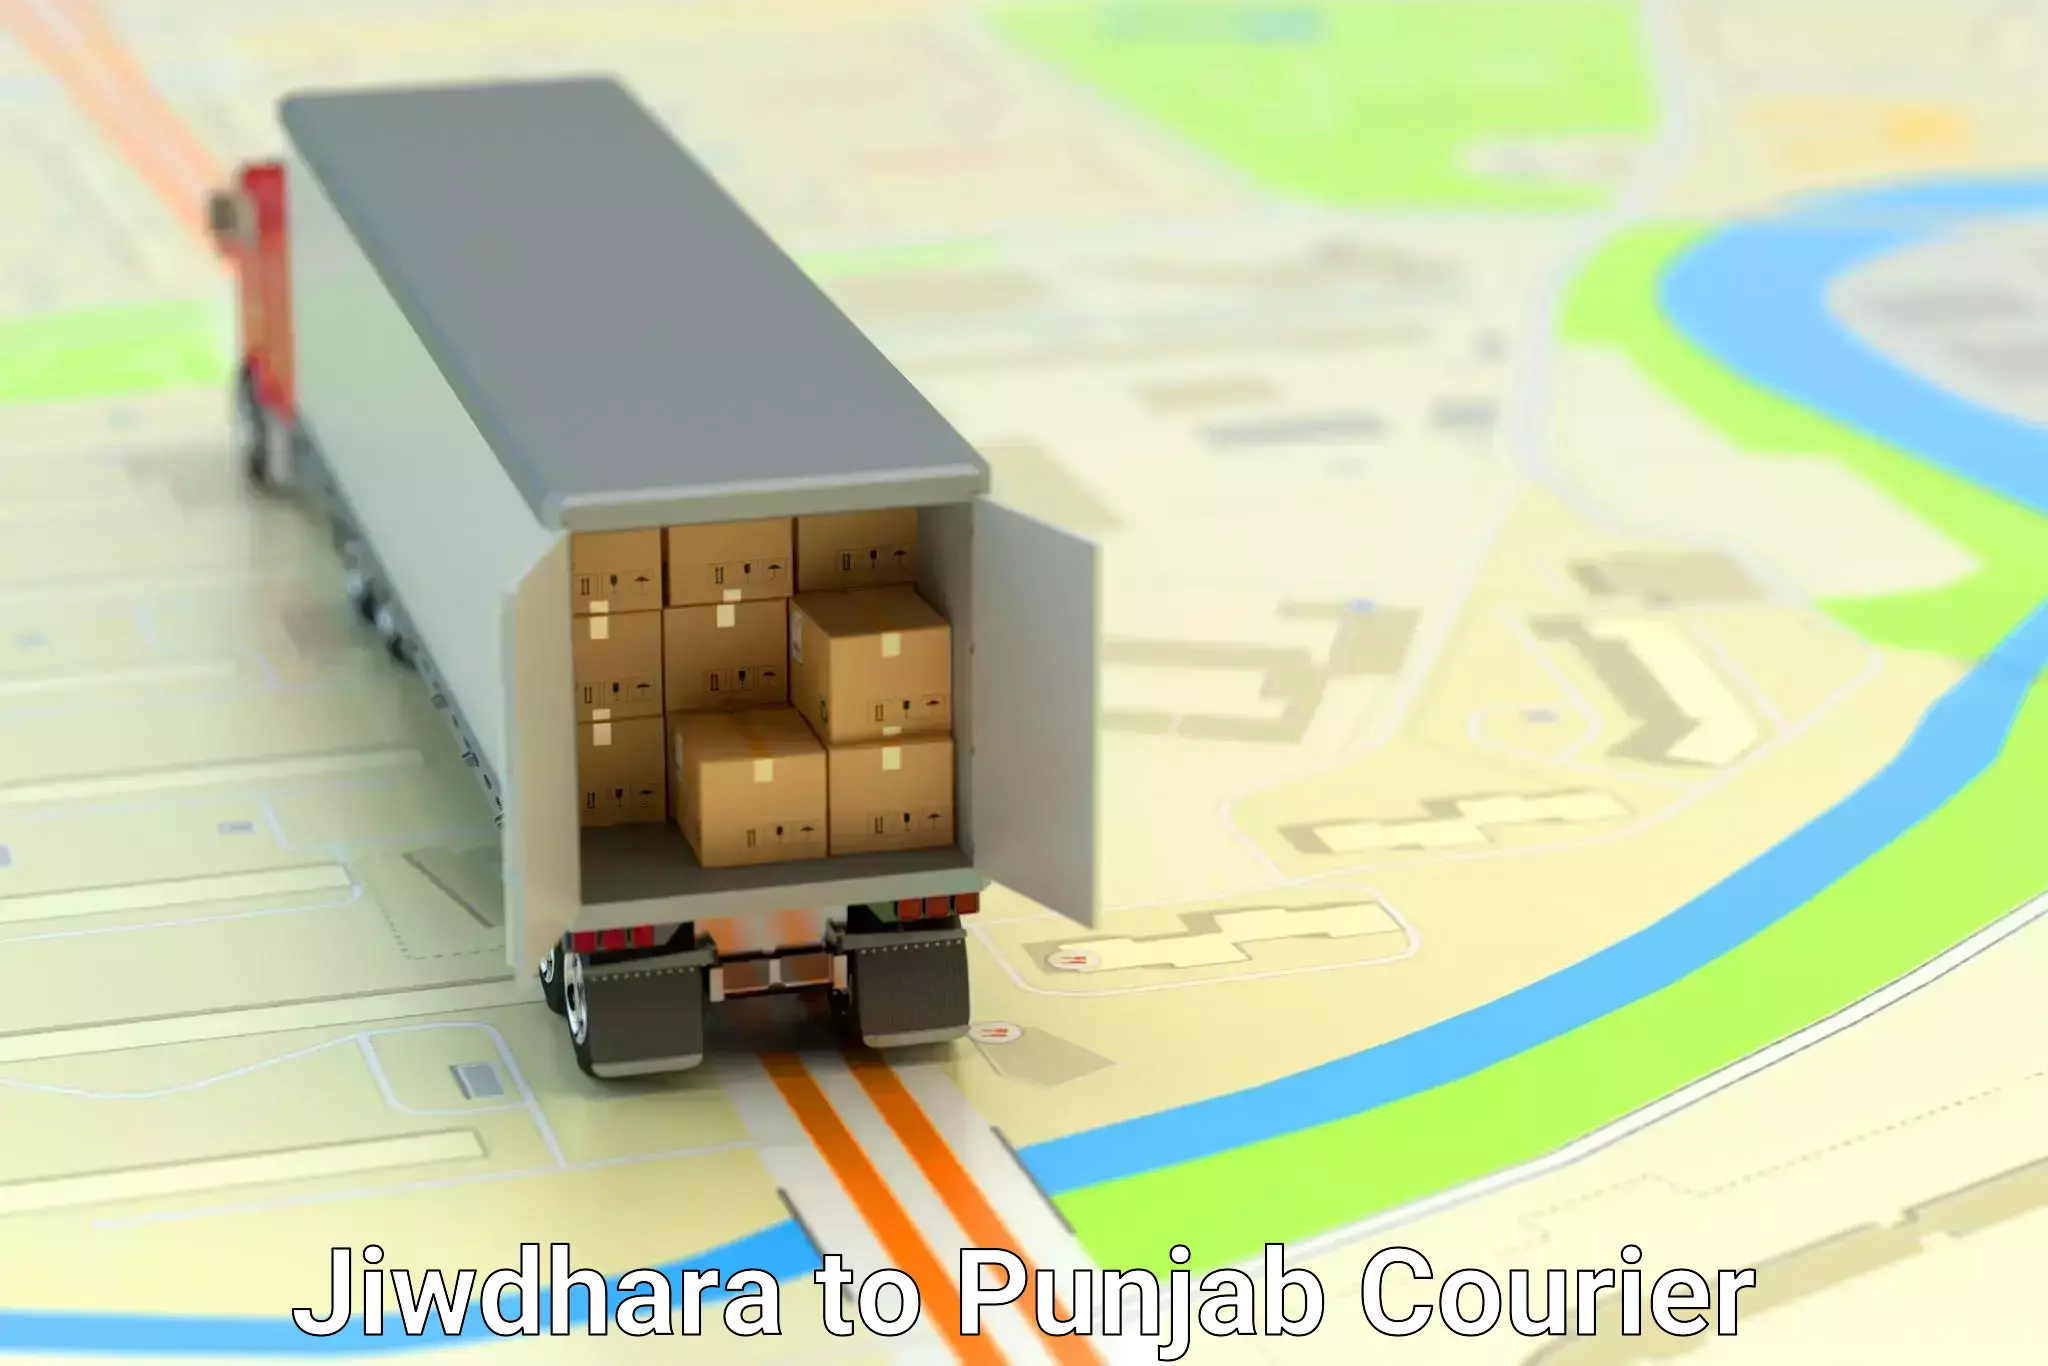 Nationwide furniture movers Jiwdhara to Punjab